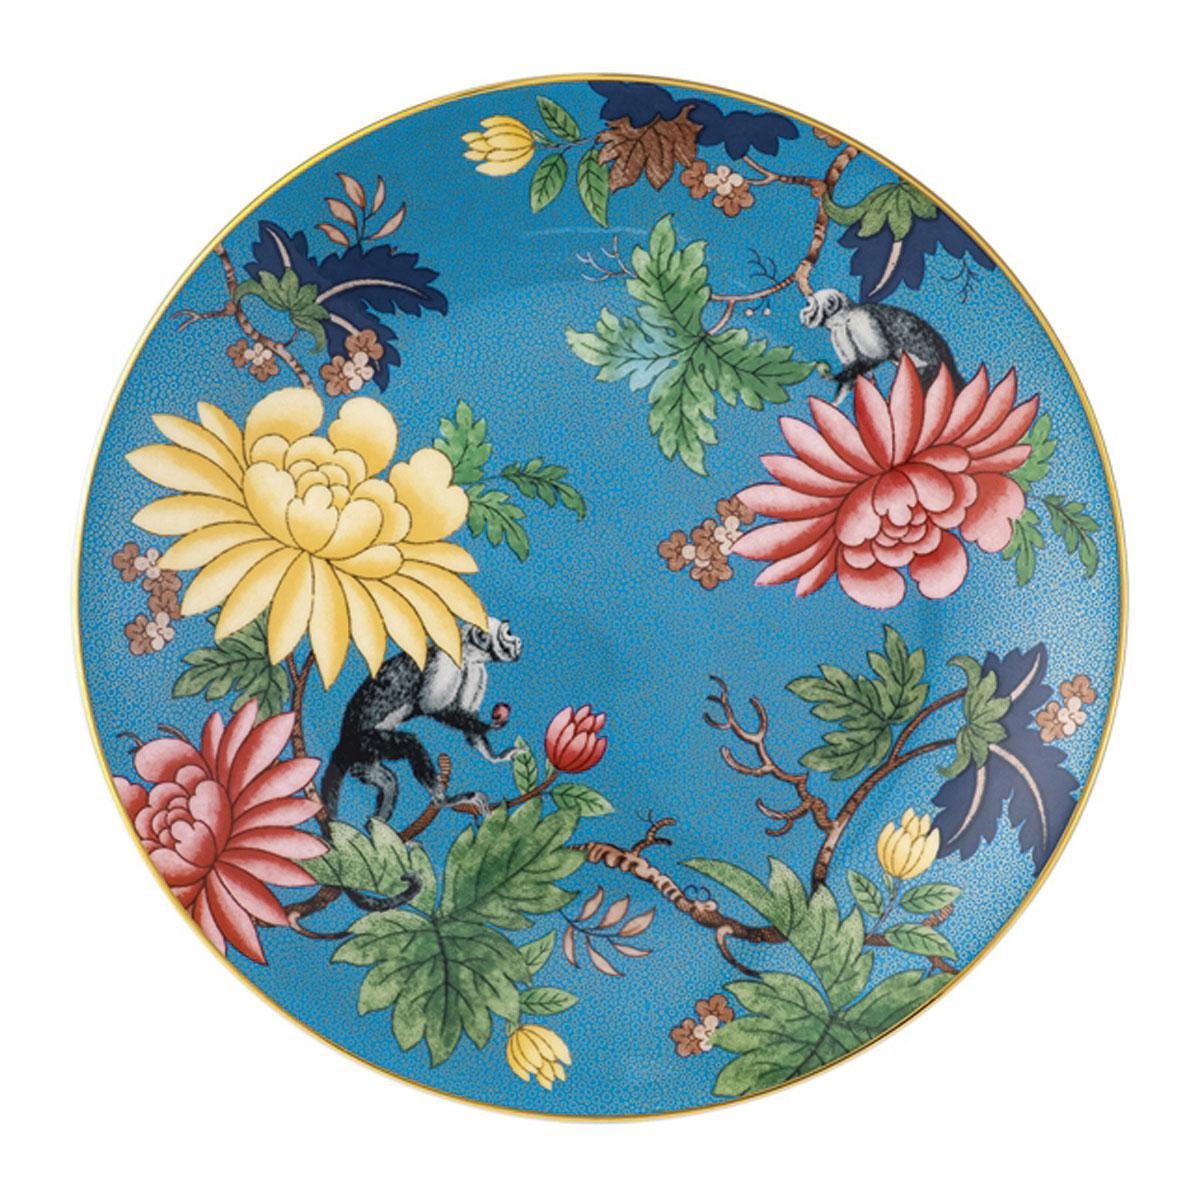 Te mooi om je eten op te schikken: porseleinen bord Sapphire Garden uit de Wonderlust-collectie van Wedgwood.